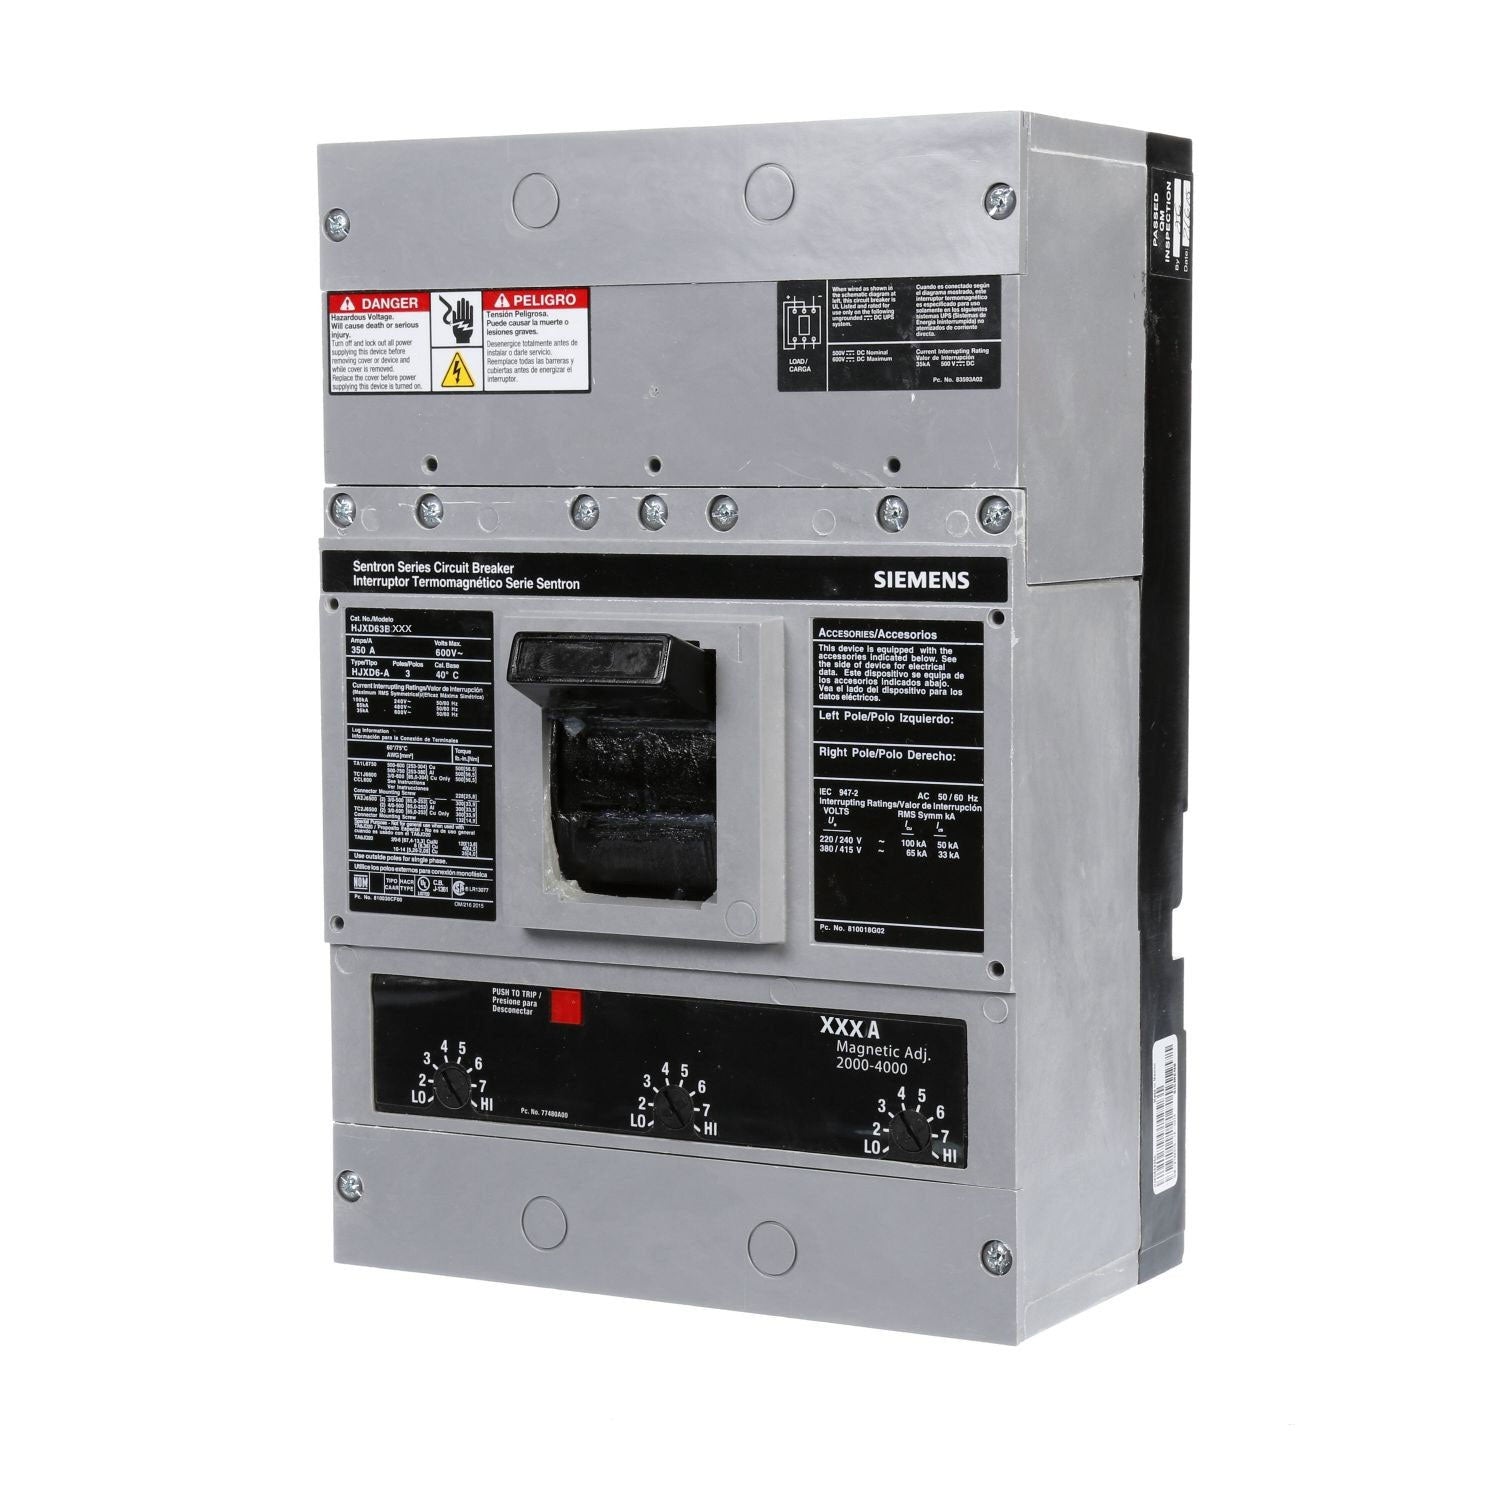 HJXD63B350 - Siemens - Molded Case Circuit Breaker